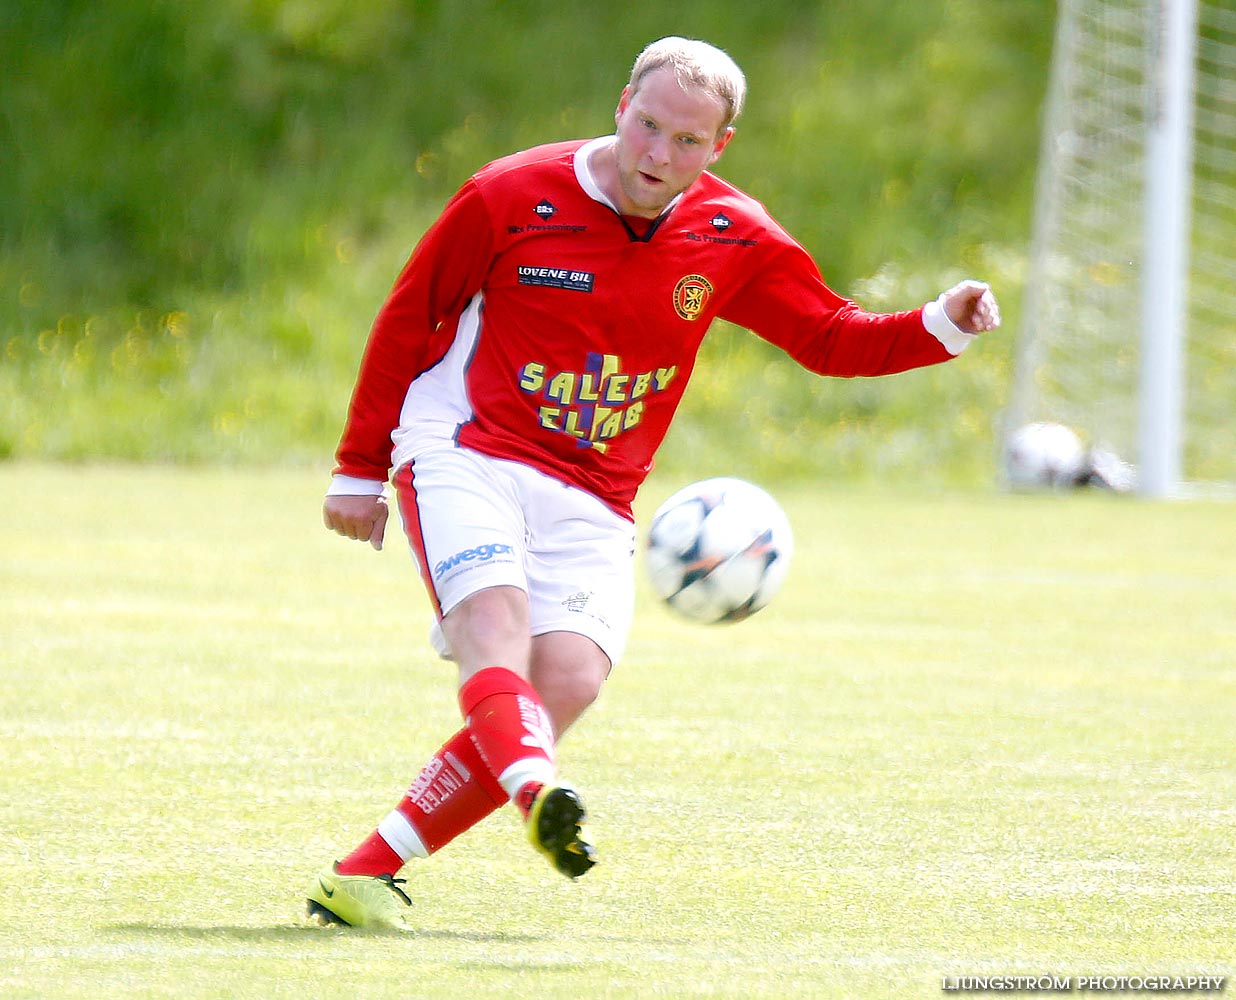 Lerdala IF-Saleby IF 4-3,herr,Lerdala IP,Lerdala,Sverige,Fotboll,,2014,89831